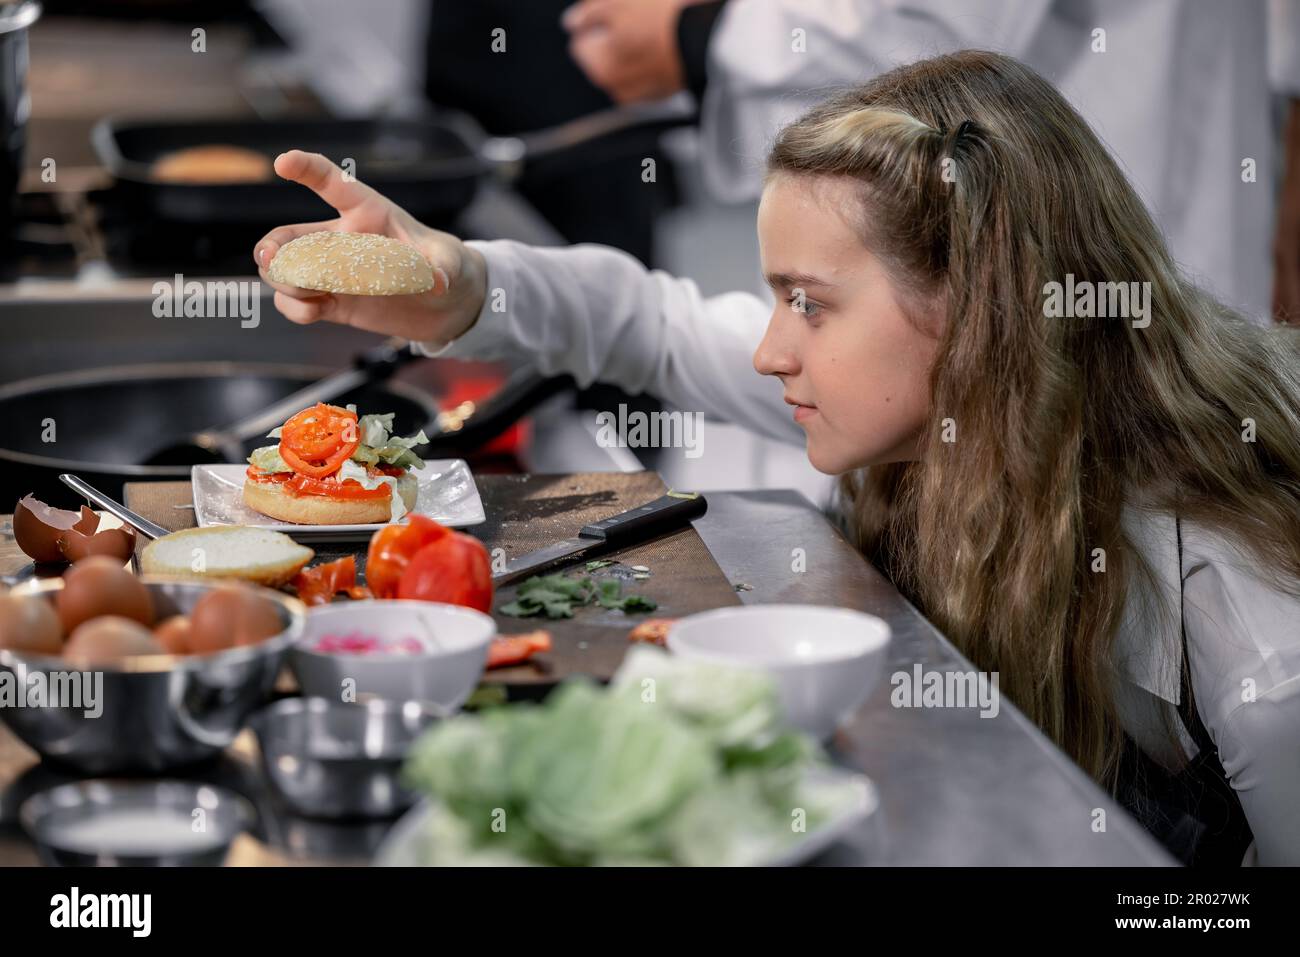 Teenager lernen von erfahrenen Köchen in der Kochschule, um Zutaten zuzubereiten und eine Vielzahl leckerer Mahlzeiten zu kreieren. In einer praktischen Übung wurde die Beziehung zwischen ihnen hergestellt Stockfoto